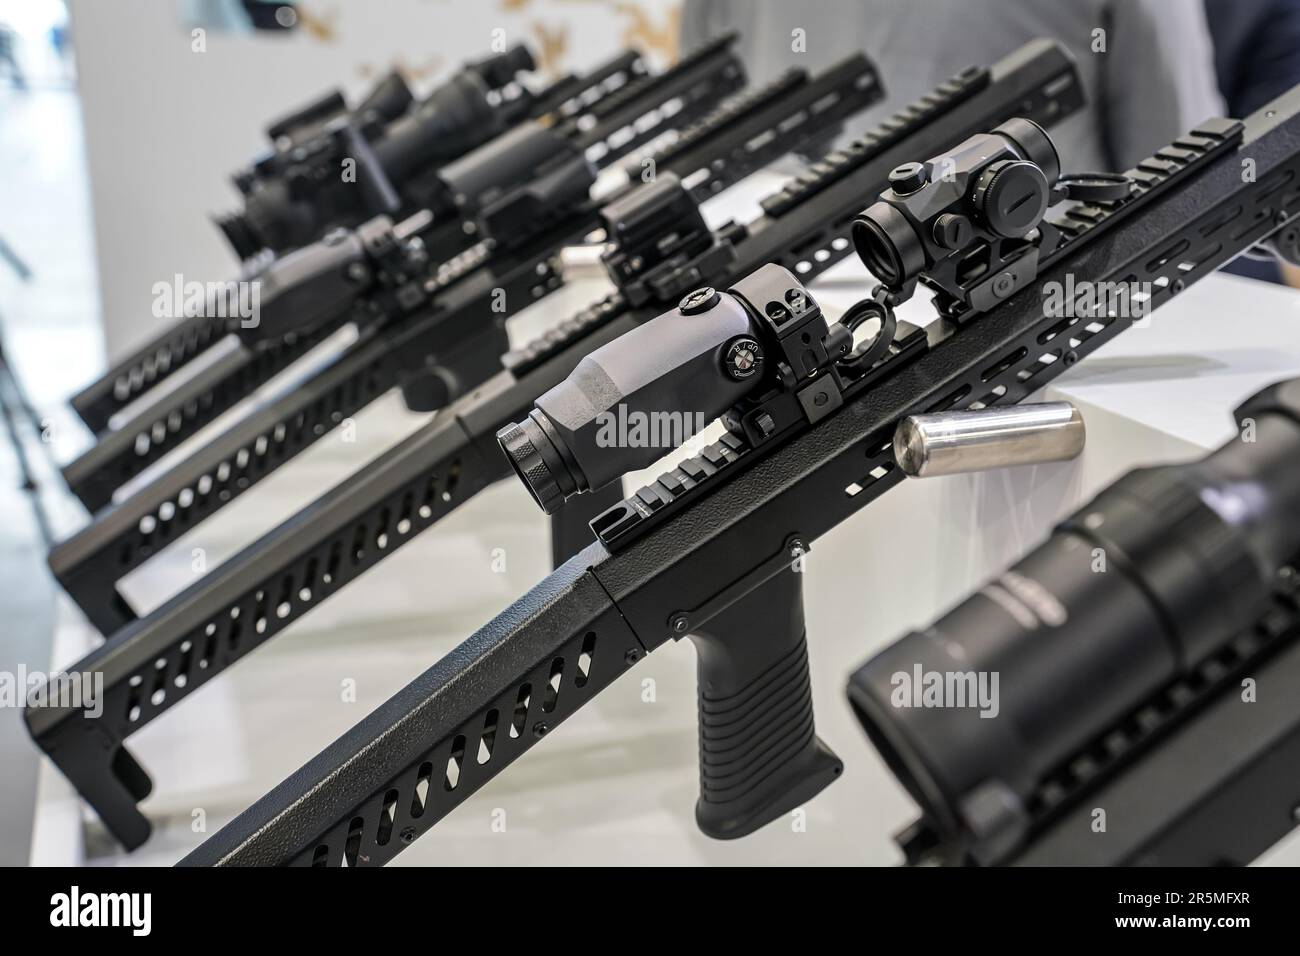 Optiques noires de l'oscilloscope de tir montées sur une barre métallique exposée au salon des armes, gros plan sur les boutons de réglage Banque D'Images